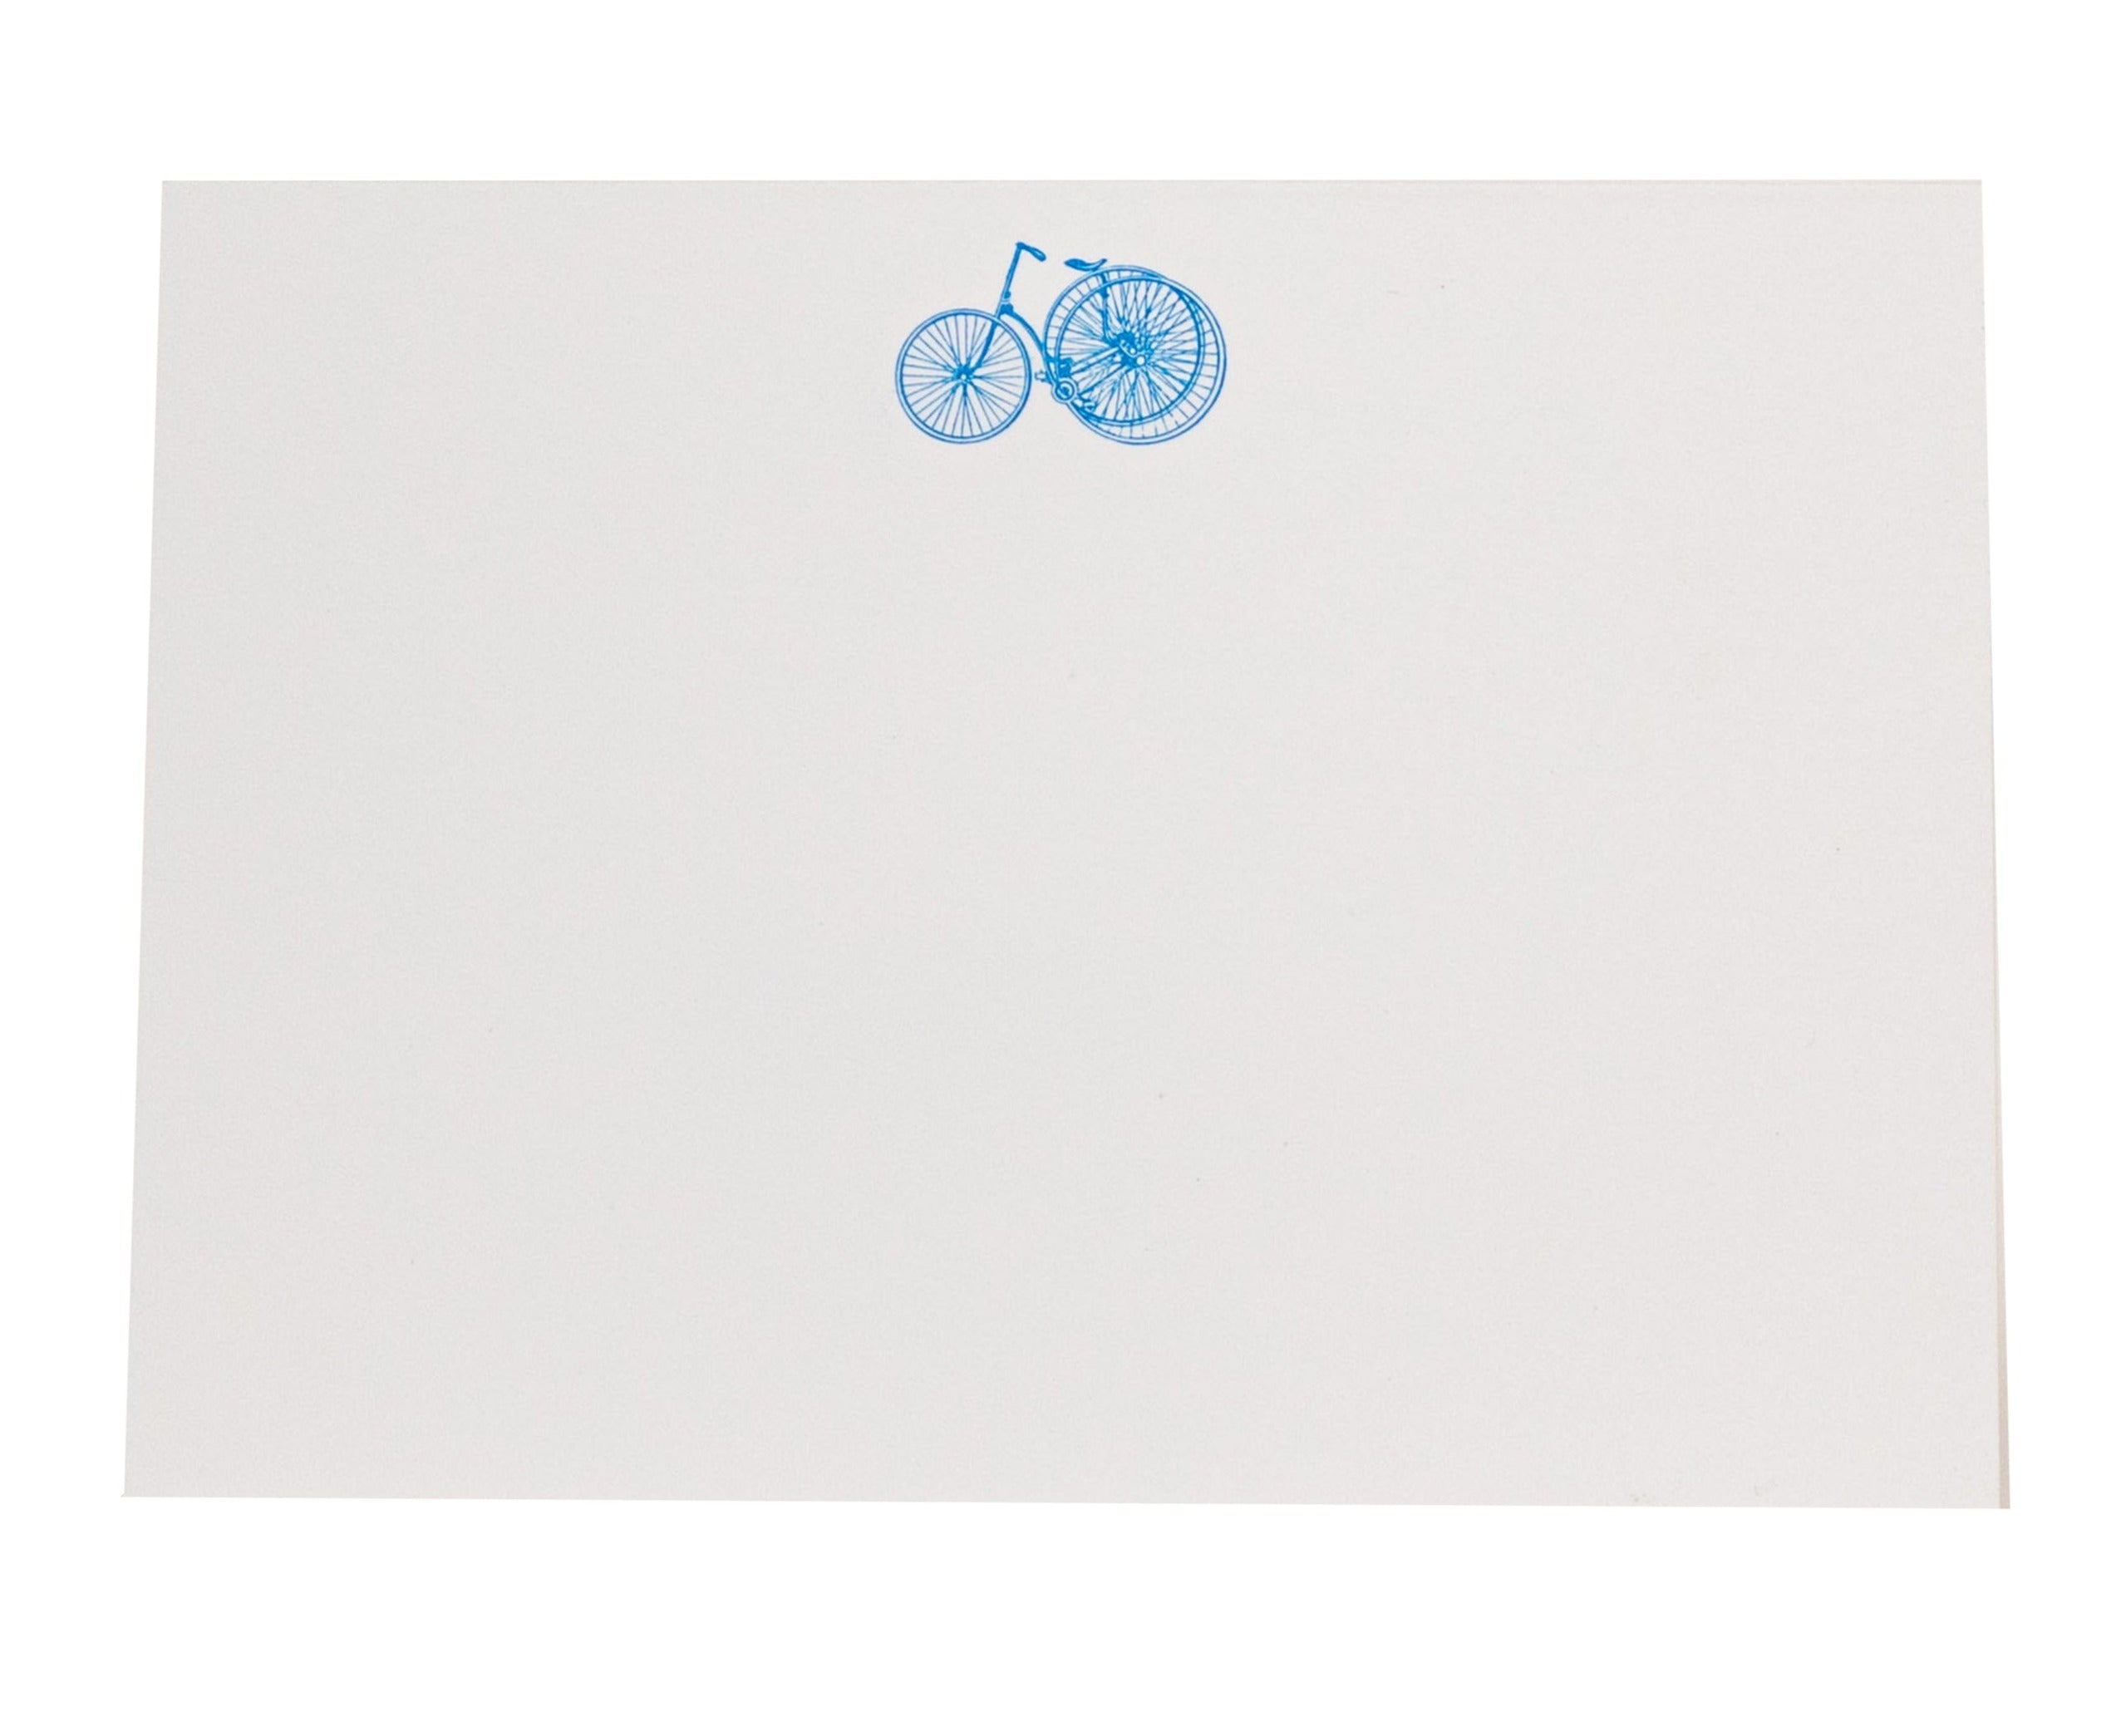 Decree Engraved 3-Wheel Bicycle Card